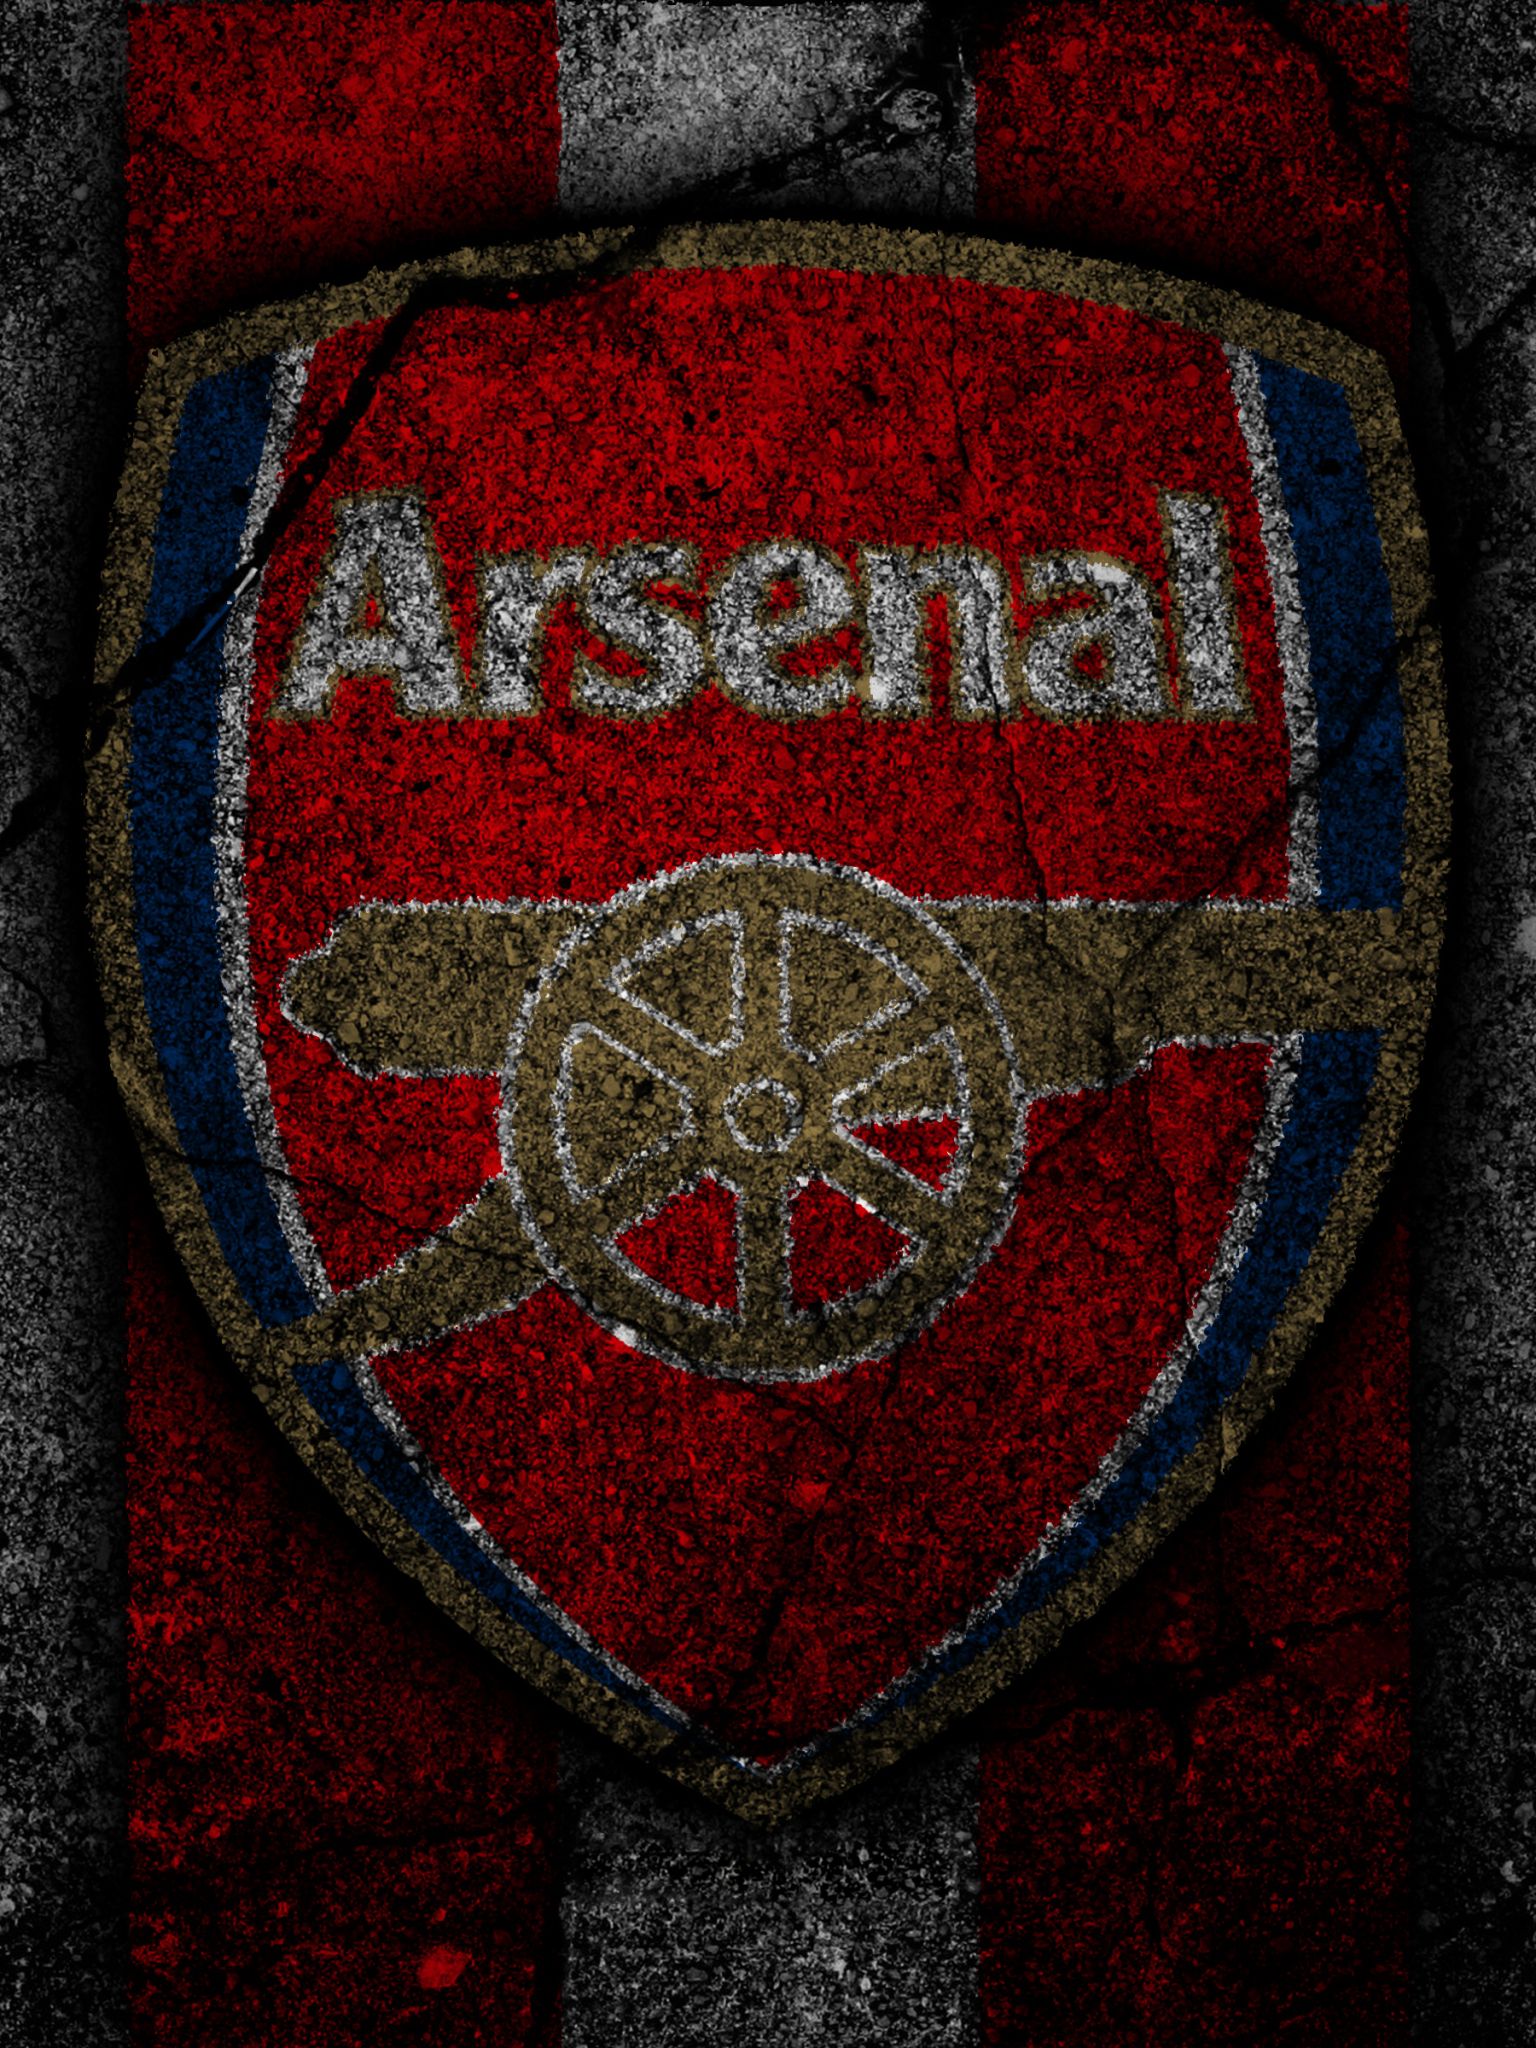 Sports Arsenal F.C. (1536x2048) Wallpaper